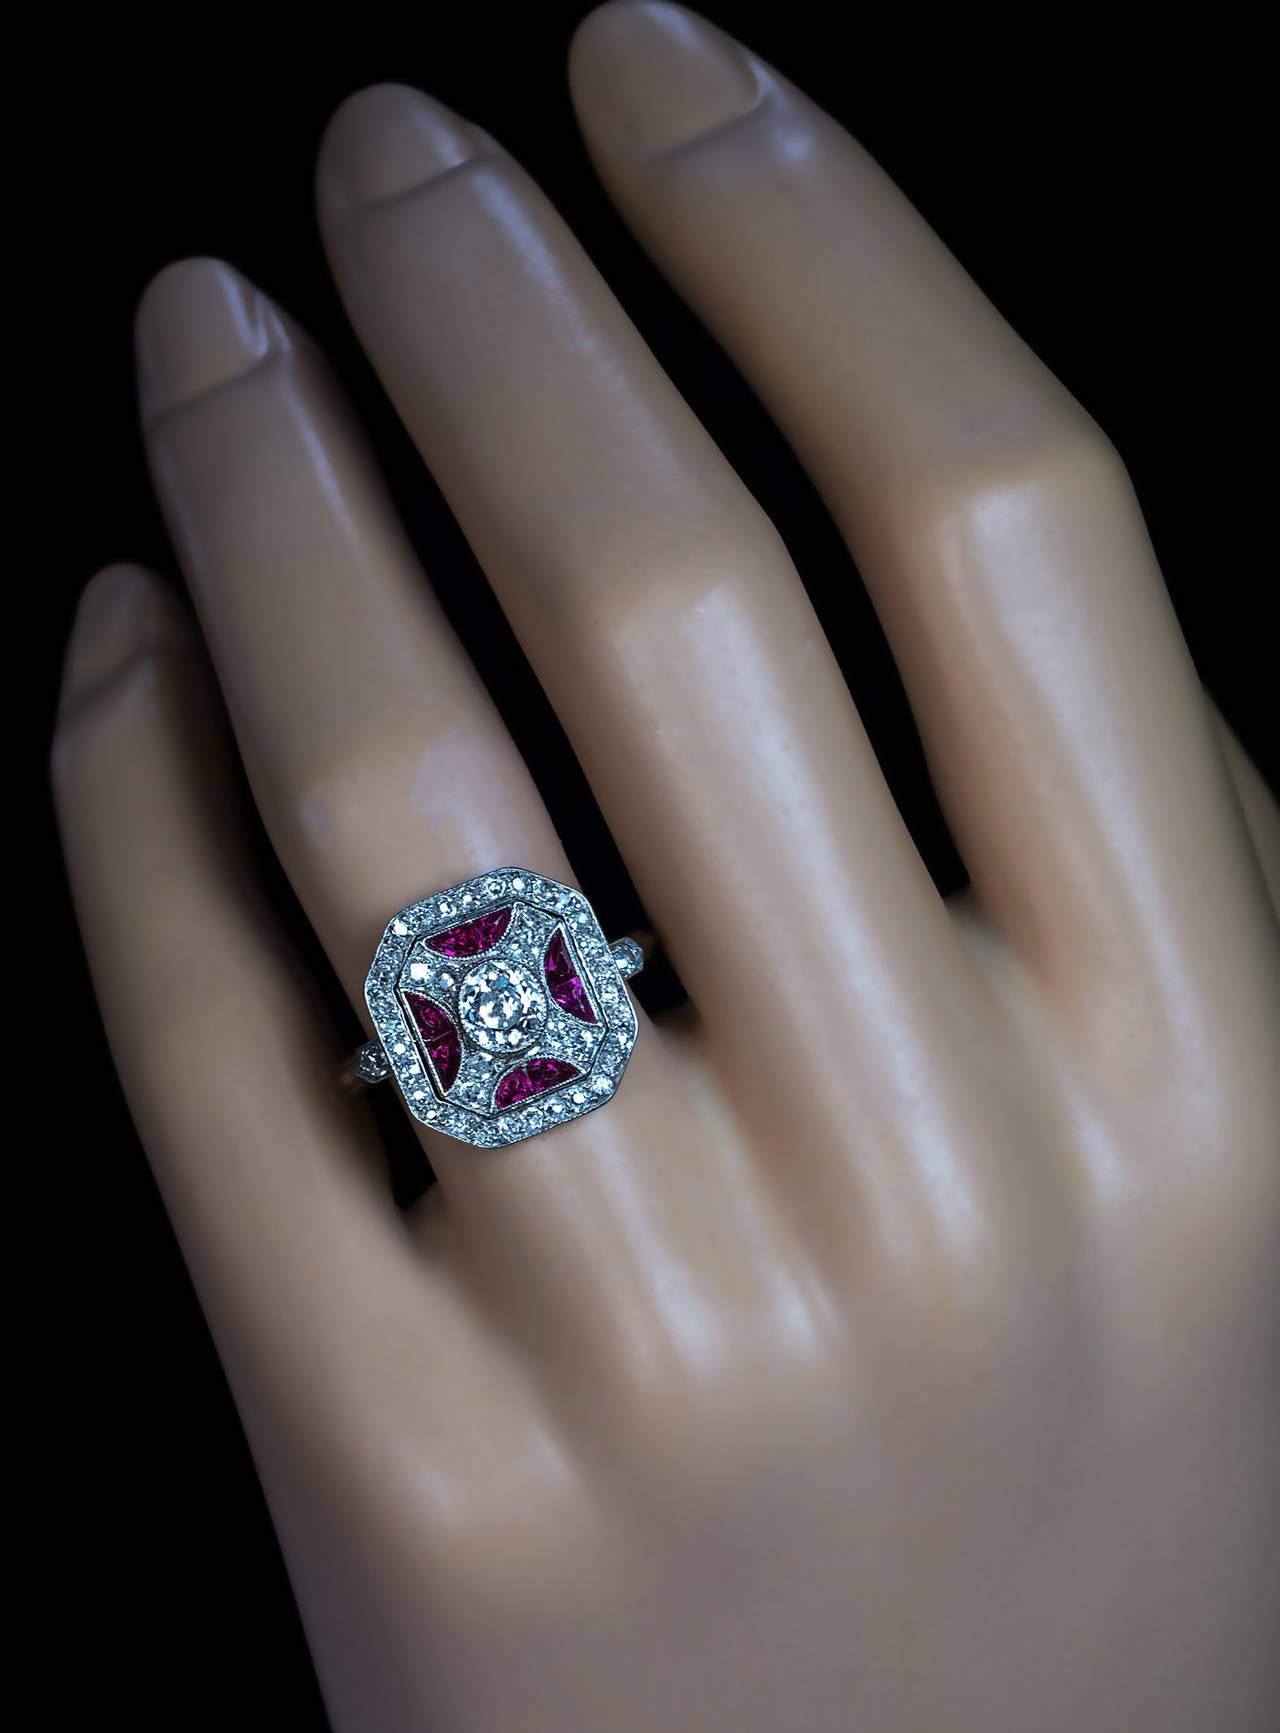 Vers 1930

Platine sur or 18 carats, centré d'un diamant ovale de taille ancienne (5 x 4,5 x 2,9 mm, environ 0,50 ct, couleur H, pureté SI1) entouré de rubis synthétiques taillés au calibre et de diamants anciens de taille unique

Marqué des